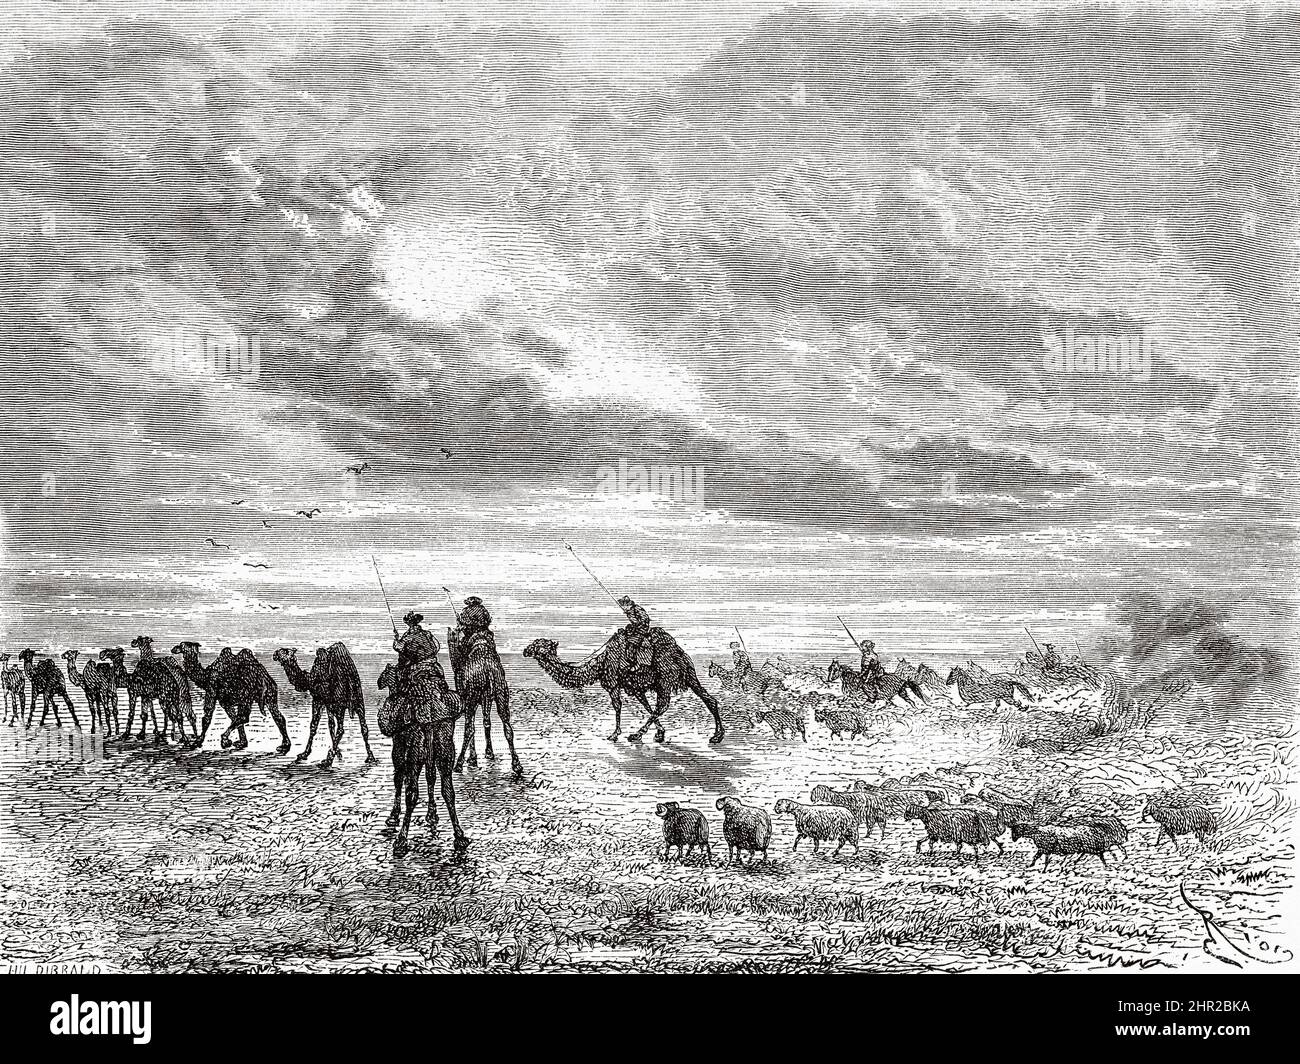 Troupeaux d'animaux dans le désert de Gobi, Mongolie. Asie. Voyage en Mongolie par Nikolai Mijailovich Przewalski en 1870-1873, le Tour du monde 1877 Banque D'Images